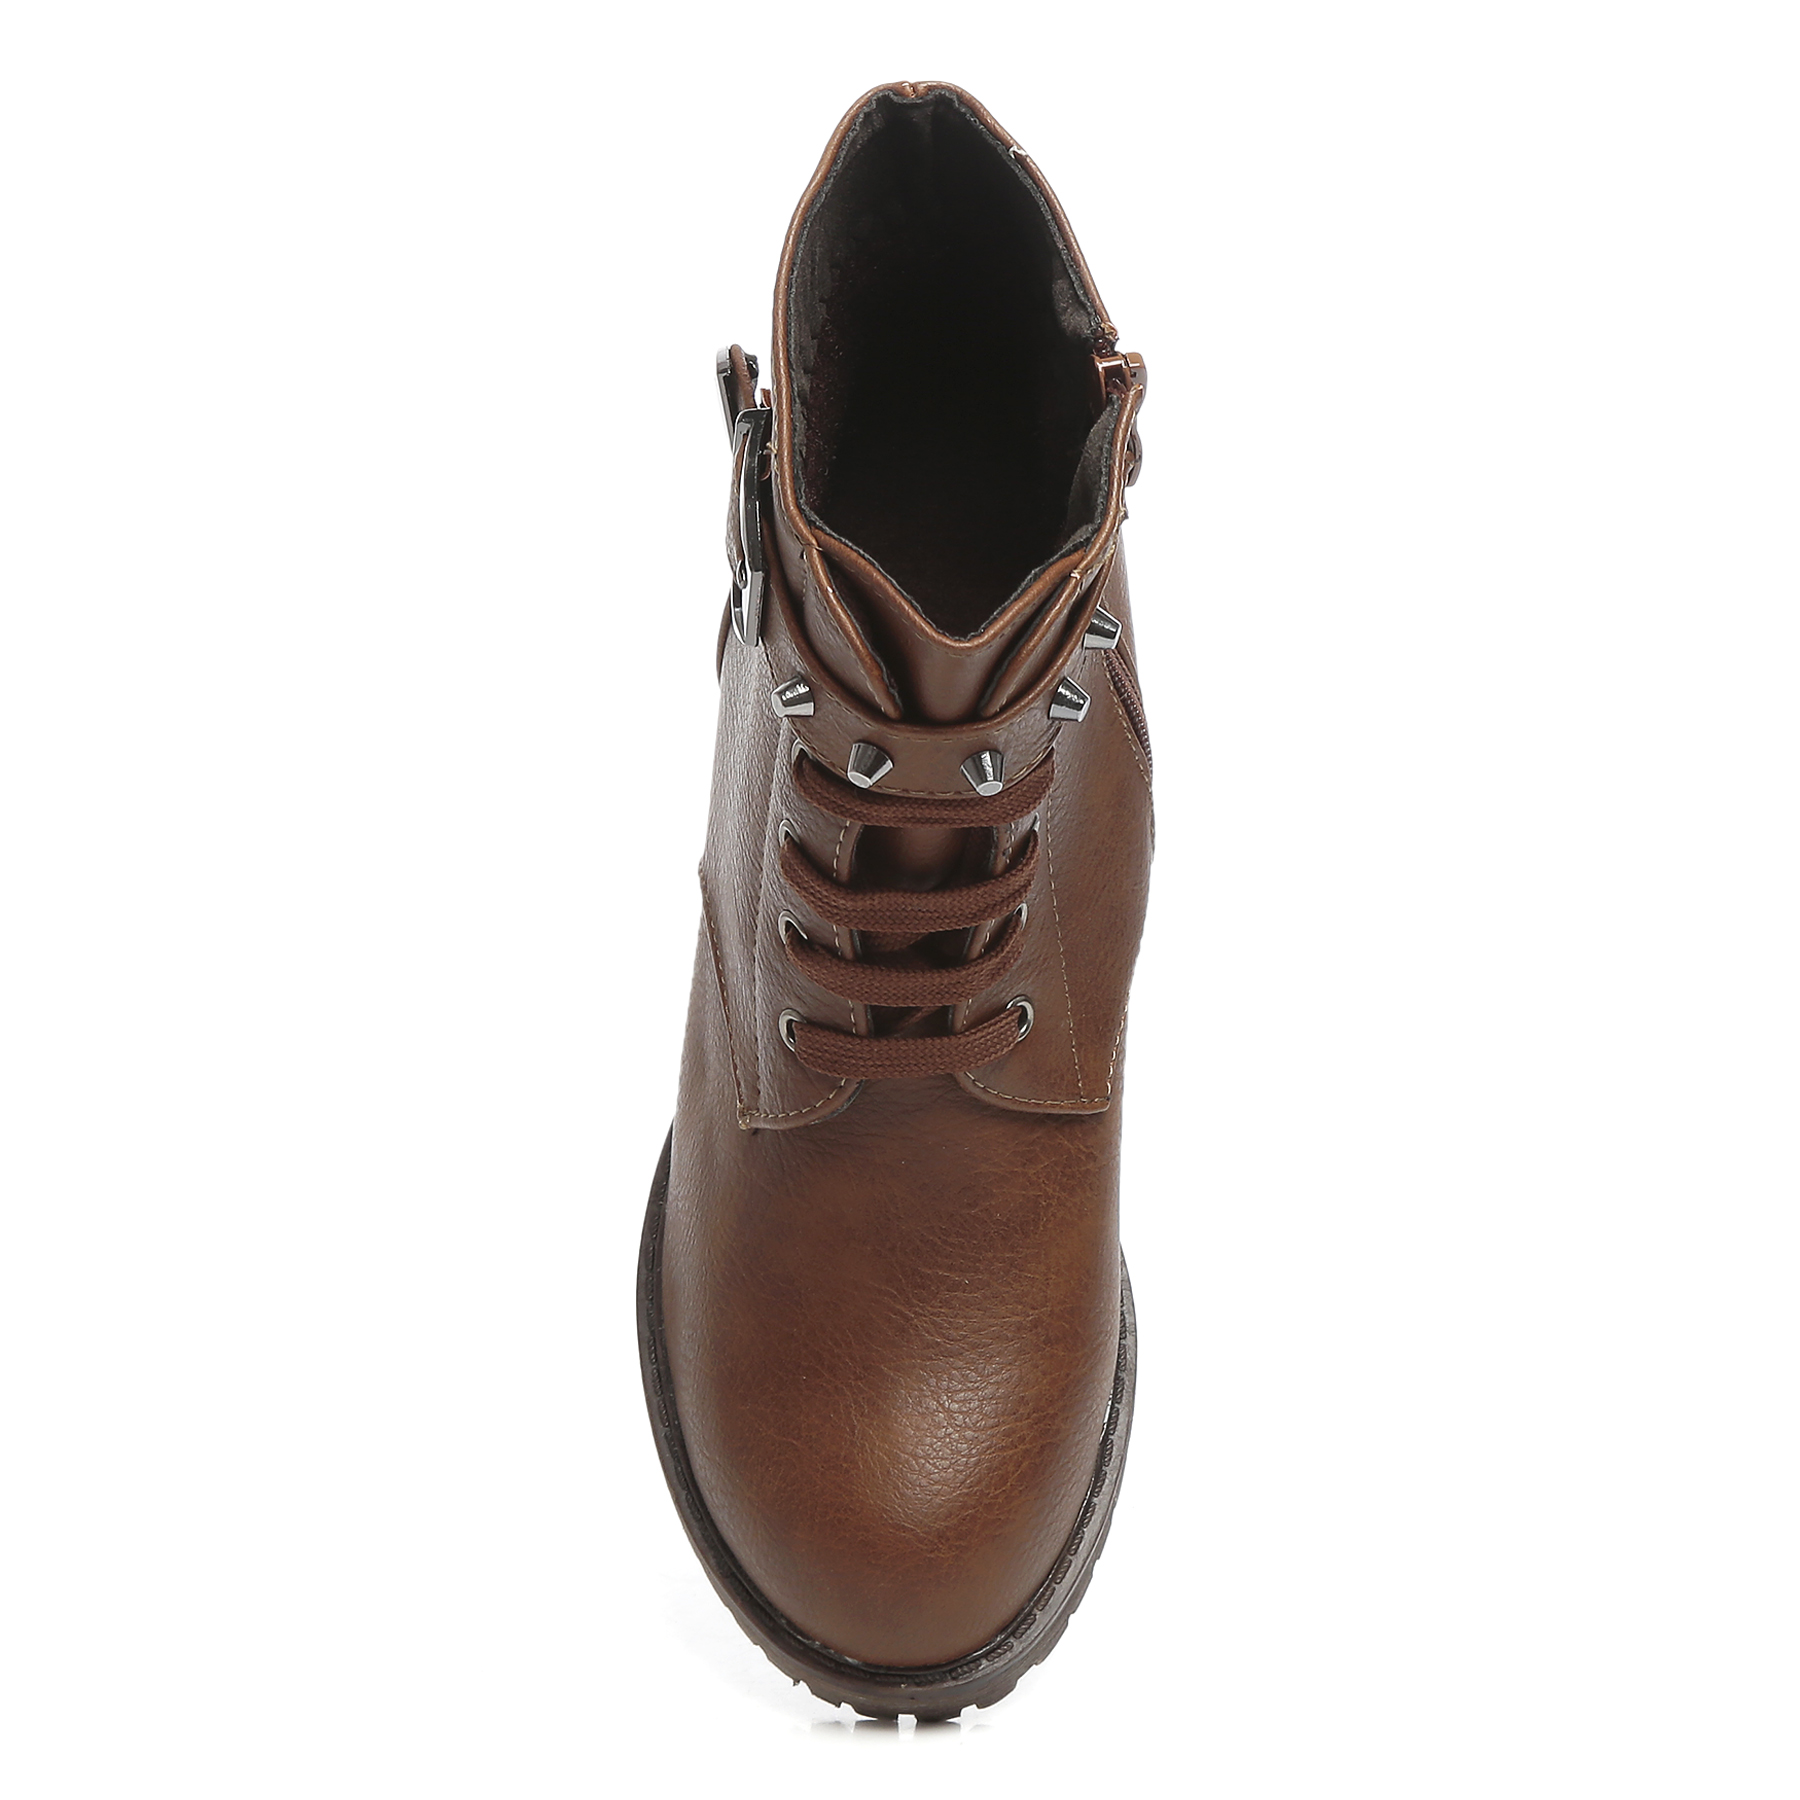 Buy TEN Women's Brown Boots Online @ ₹1699 from ShopClues